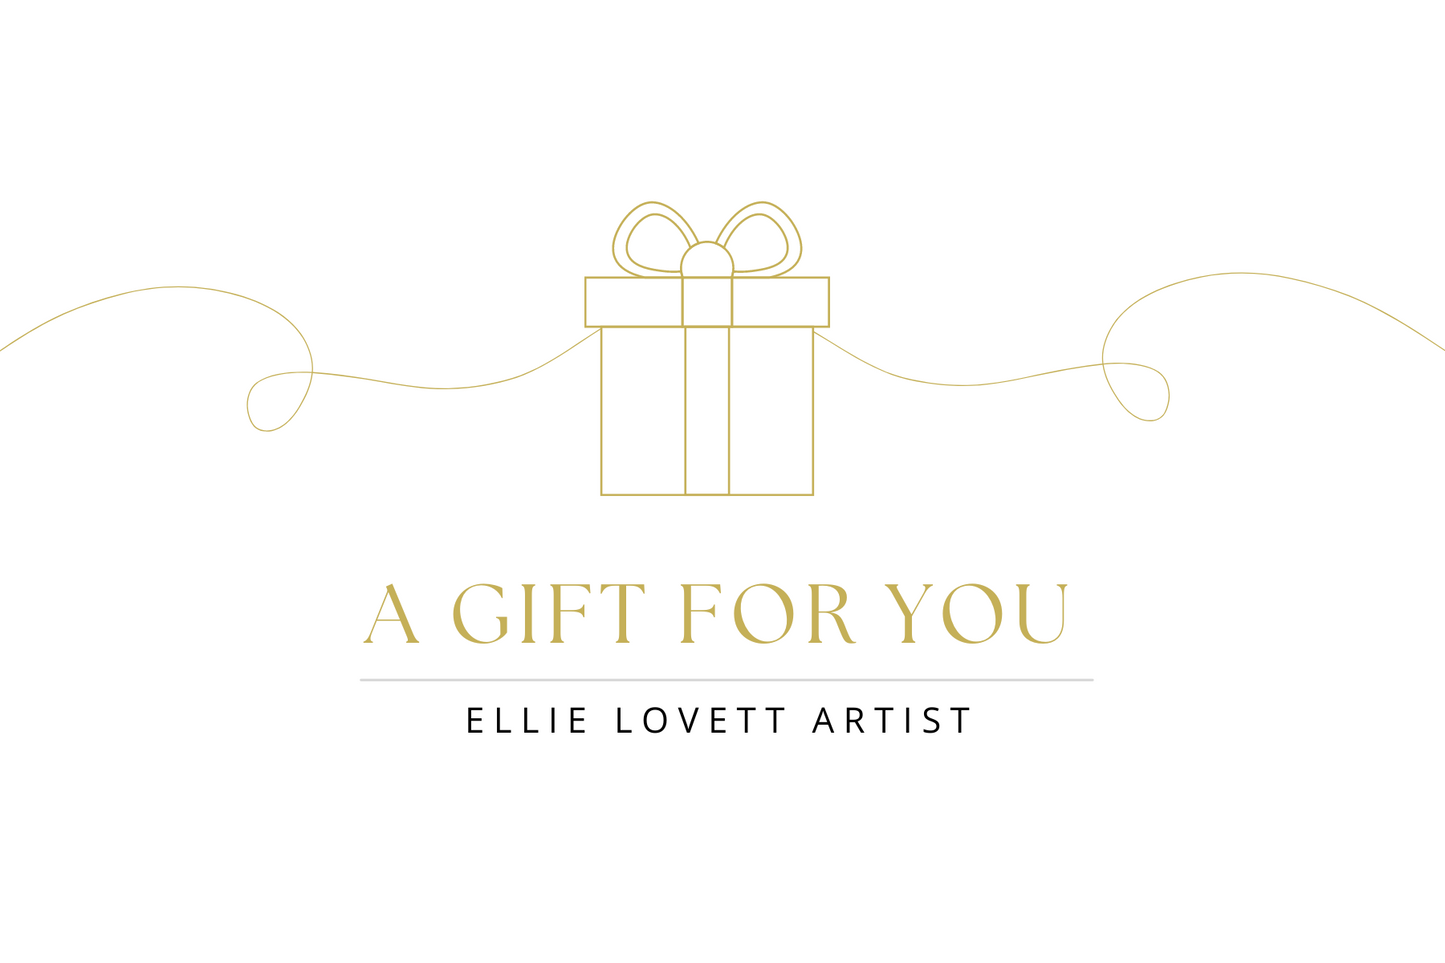 Ellie Lovett Artist Gift Card